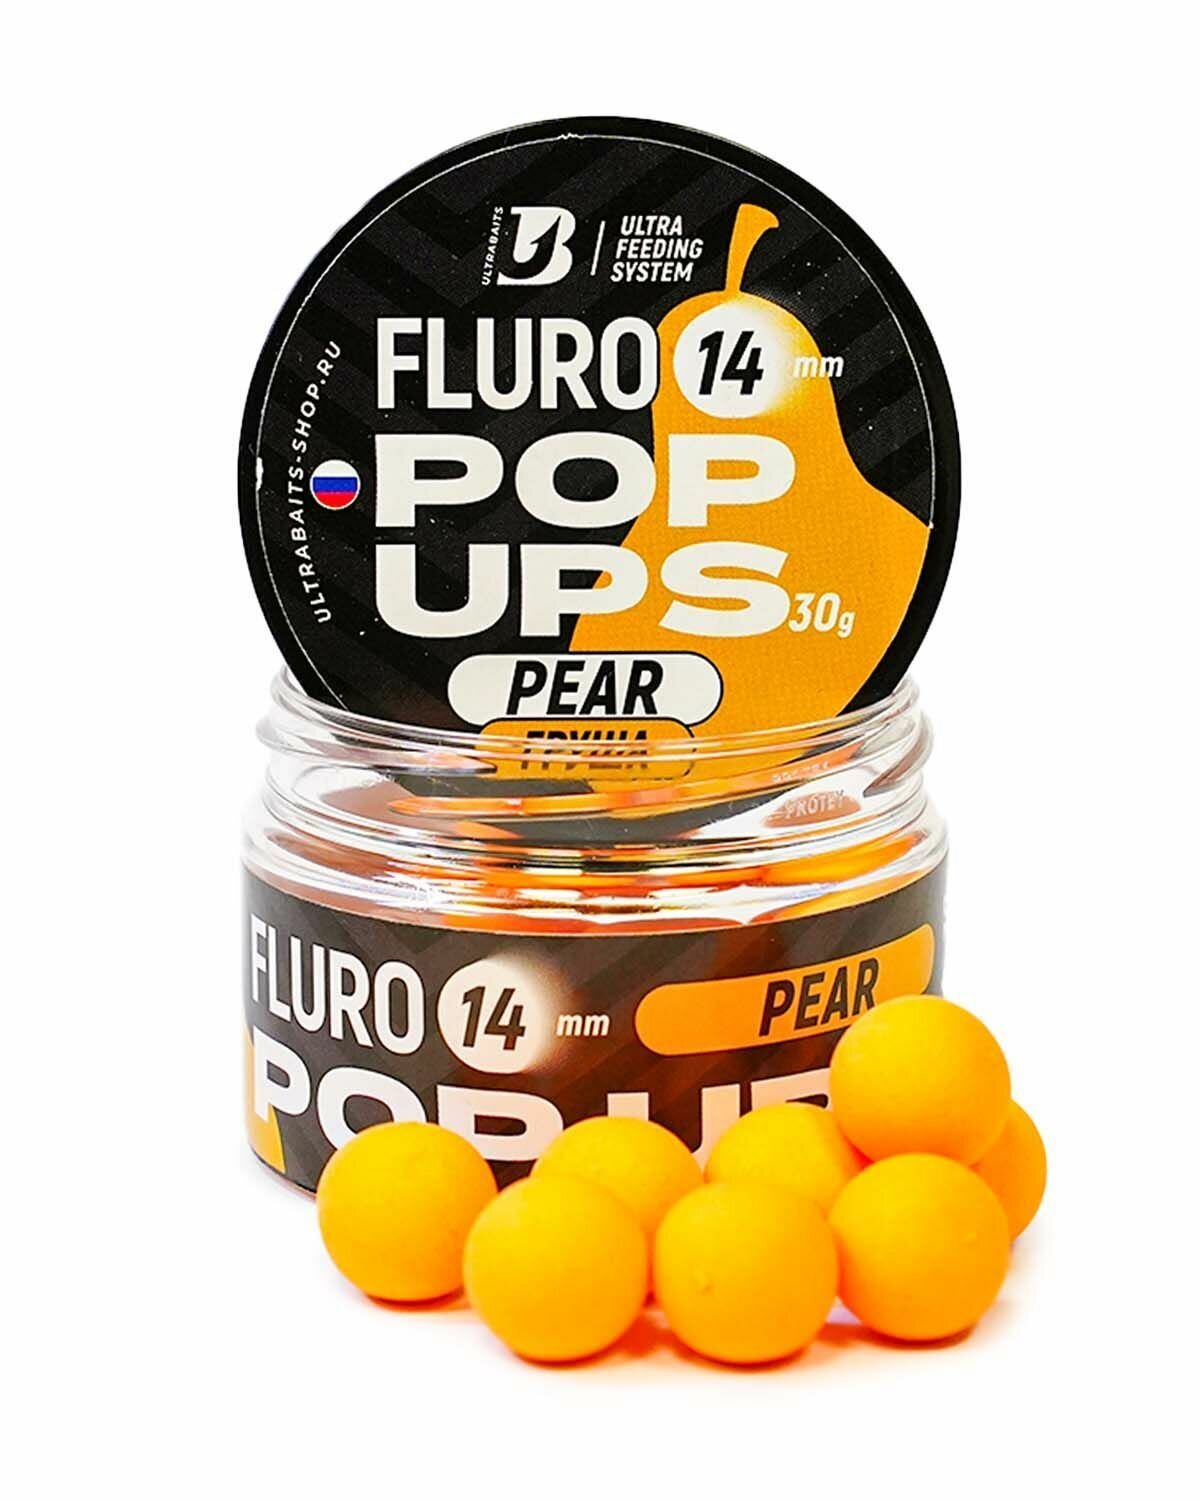 Плавающие бойлы UltraBaits Fluoro Pop-Ups груша дюшес 14mm 30gr